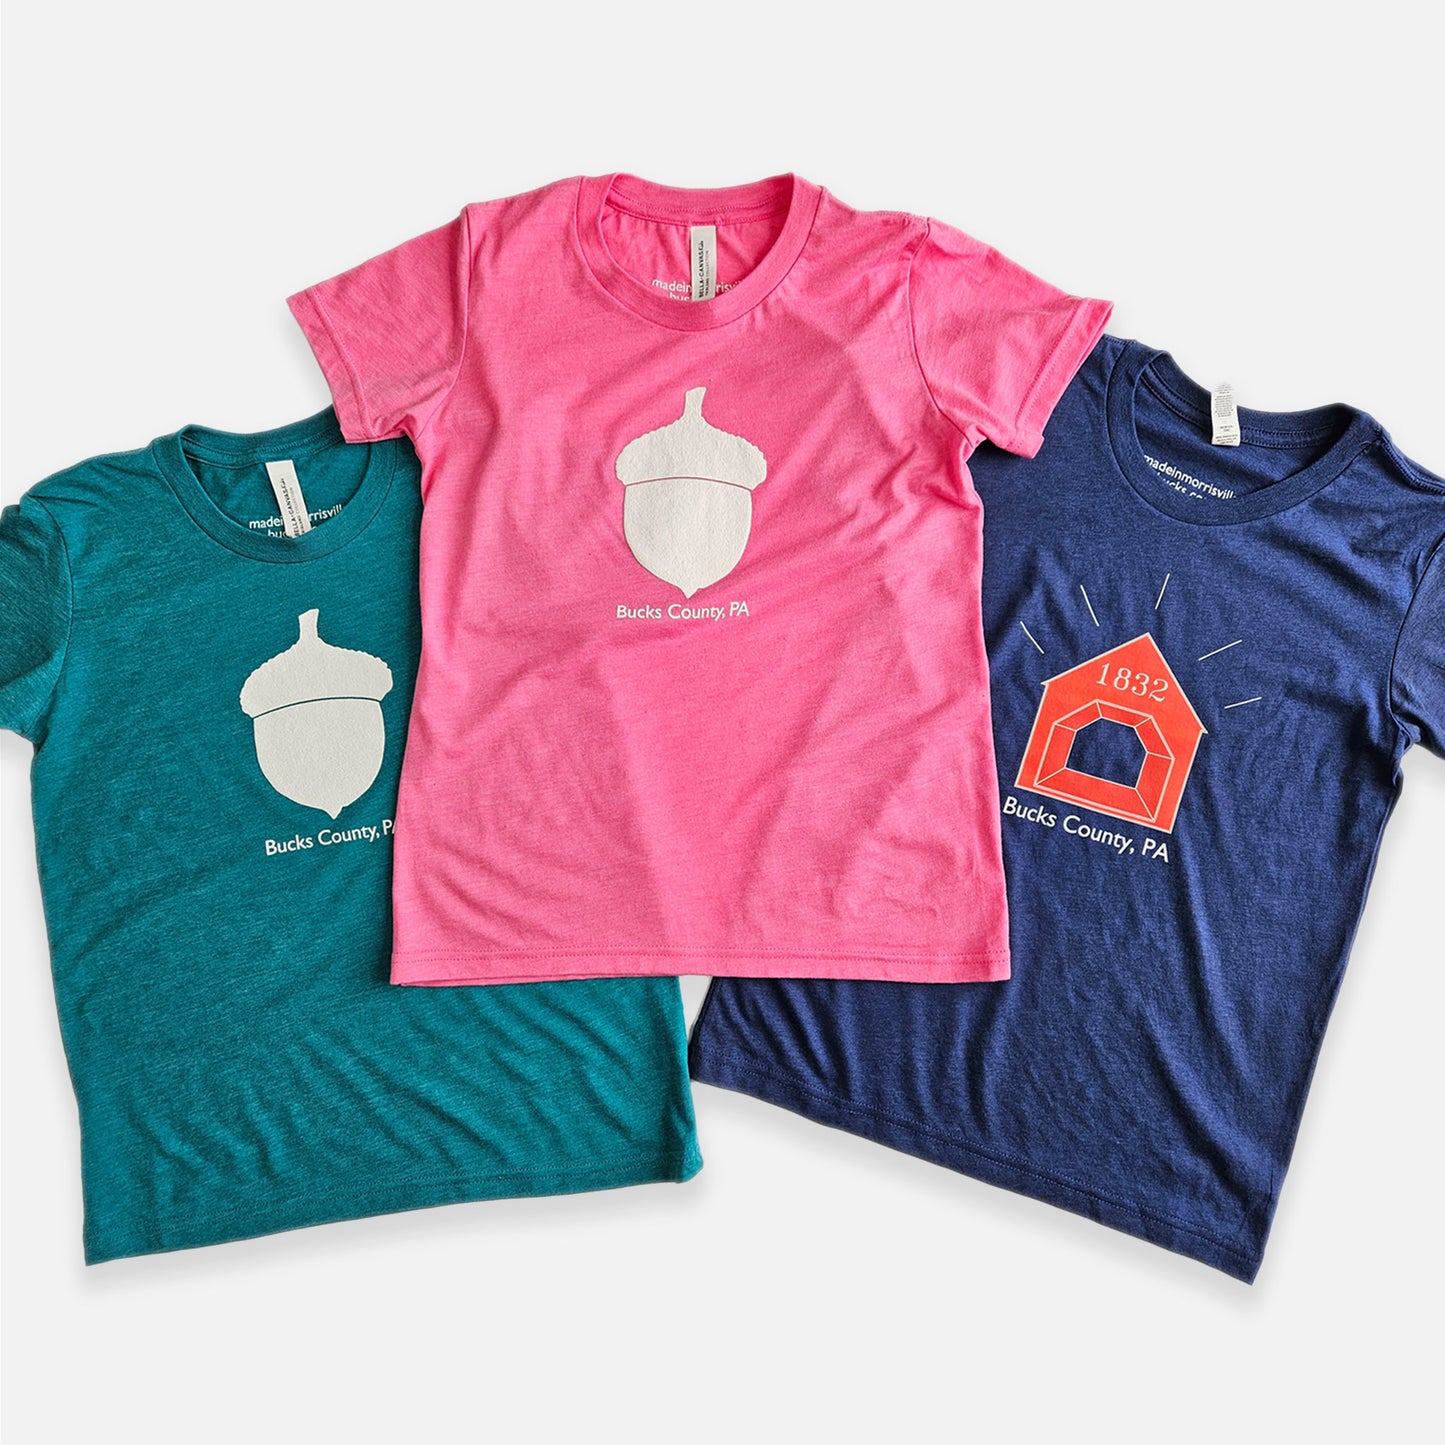 Acorn / Bucks County graphic Kids T-shirt